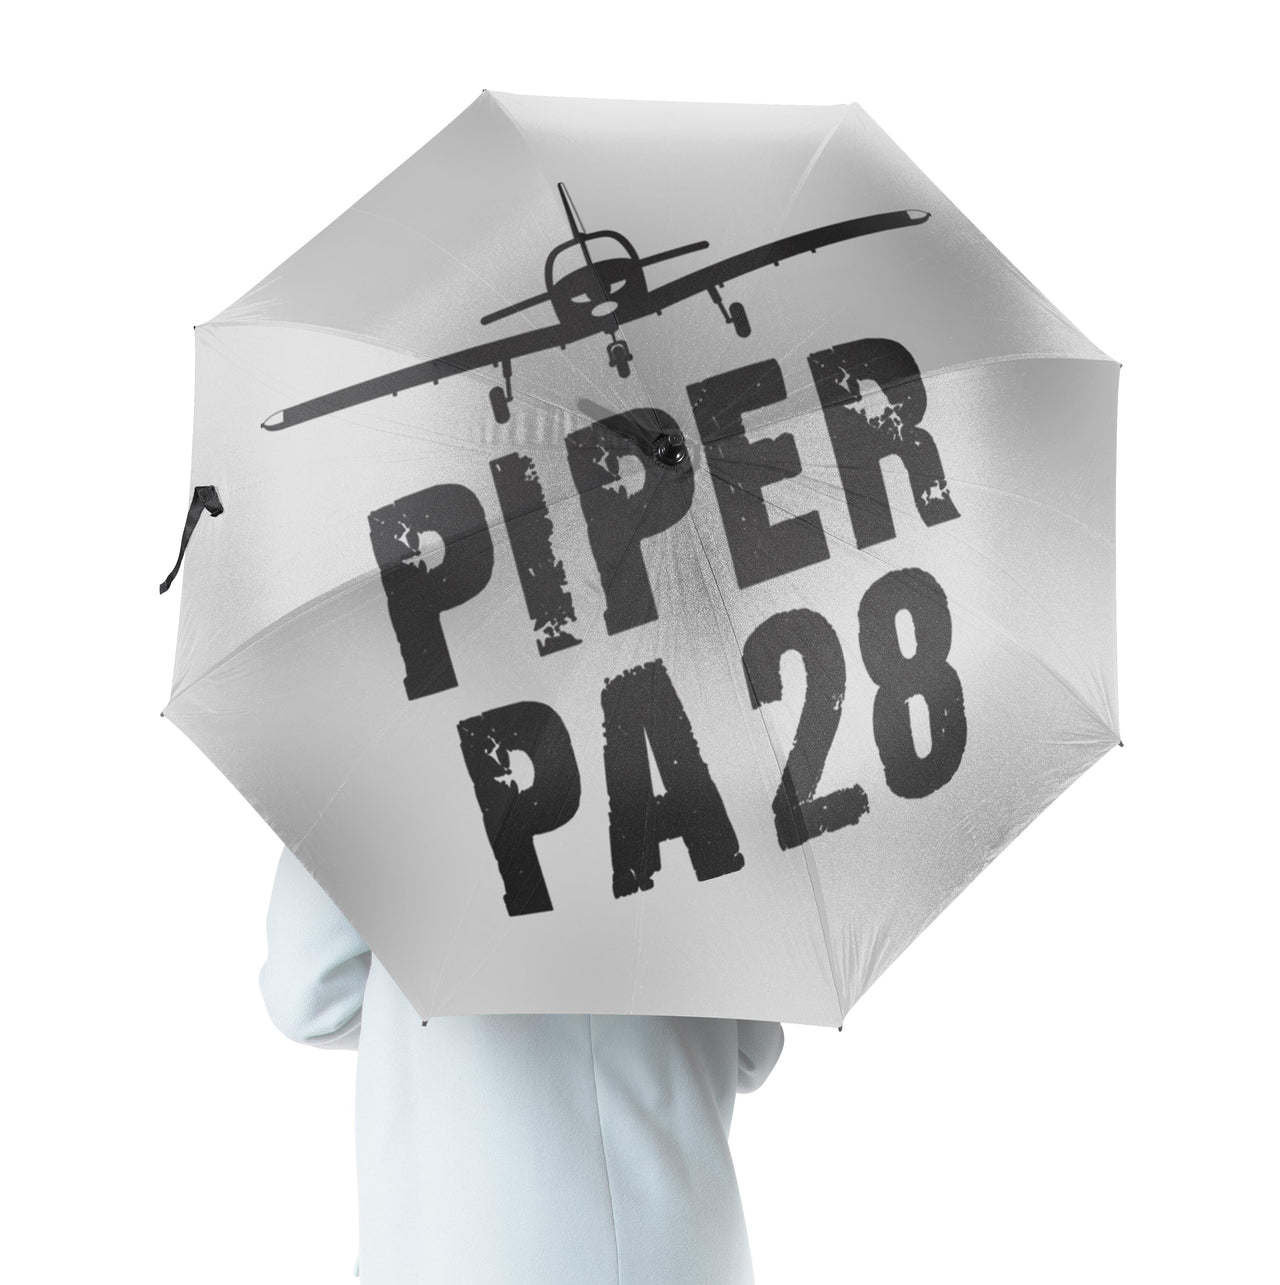 Piper PA28 & Plane Designed Umbrella